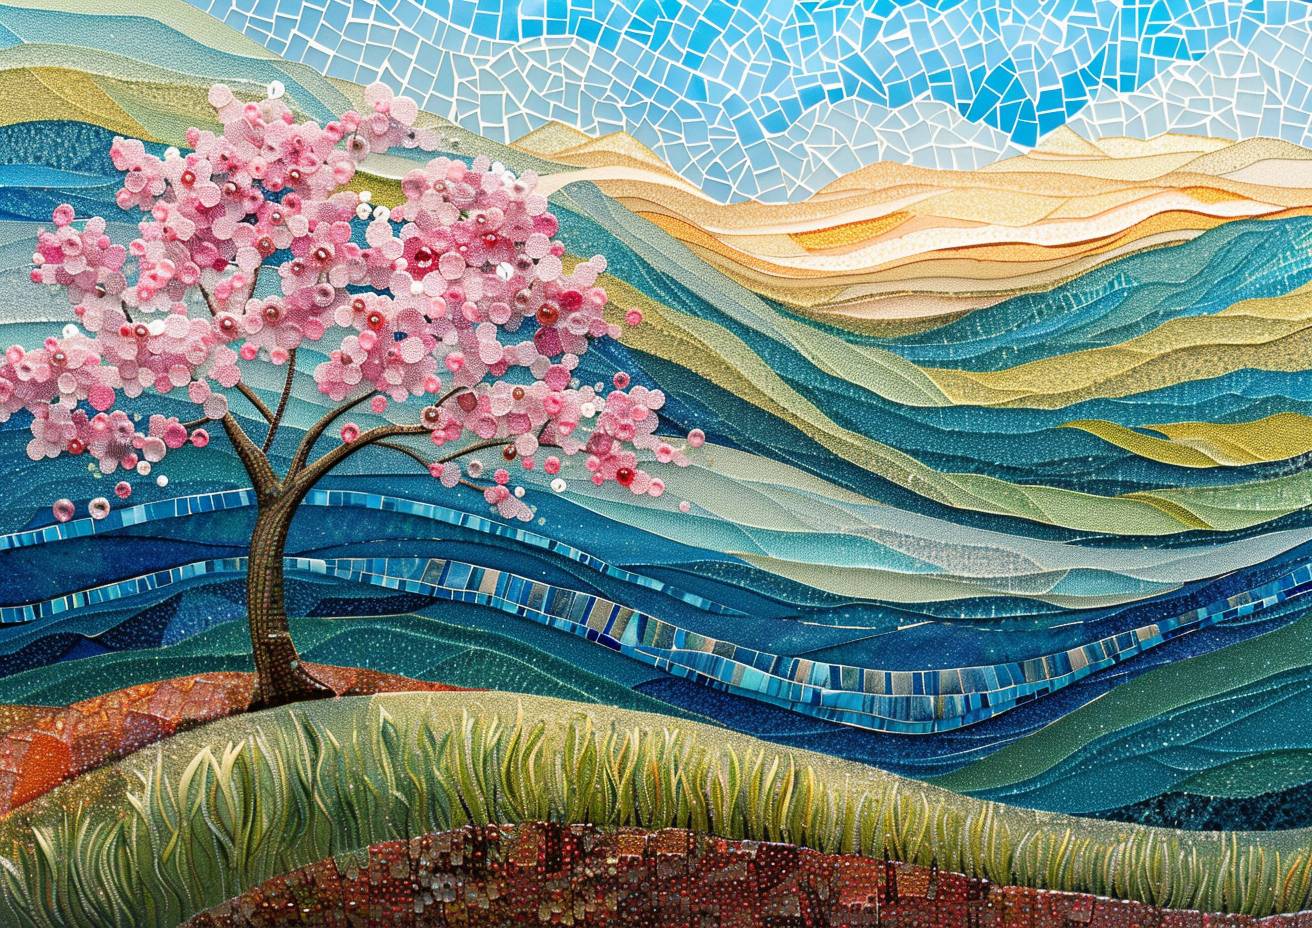 シーグラスモザイク、入り組んだディテール、桜の木、起伏のある丘、陽光